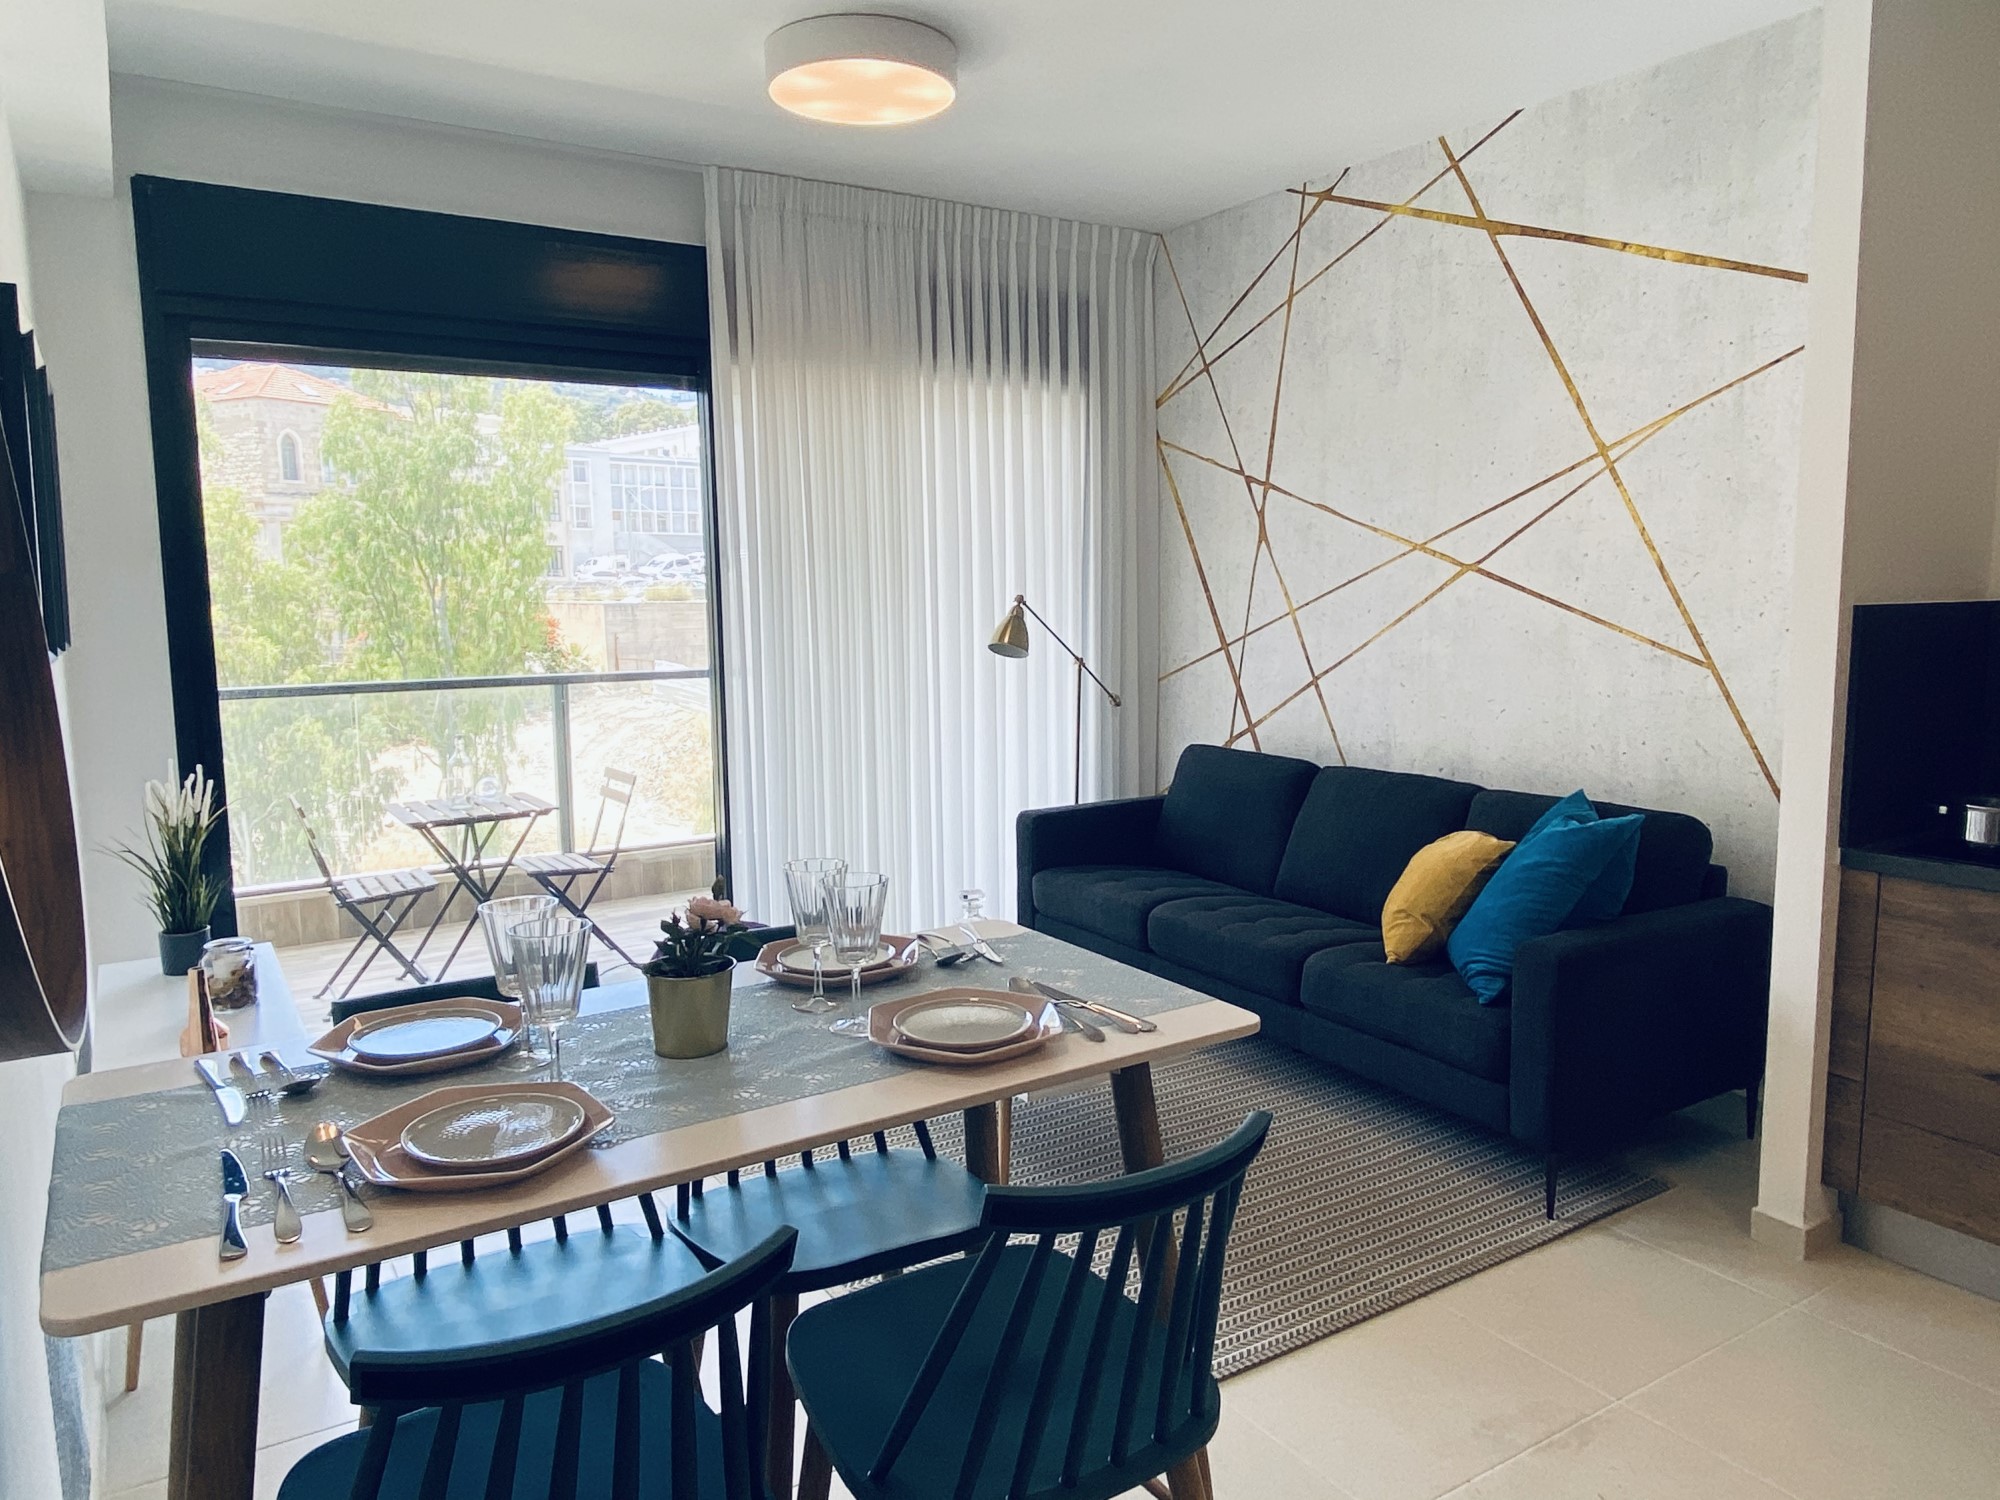 גולדן ארט פתחה דירה לדוגמא בת 2 חדרים בבניין להשכרה ארוכת טווח בפרויקט הרובע בחיפה